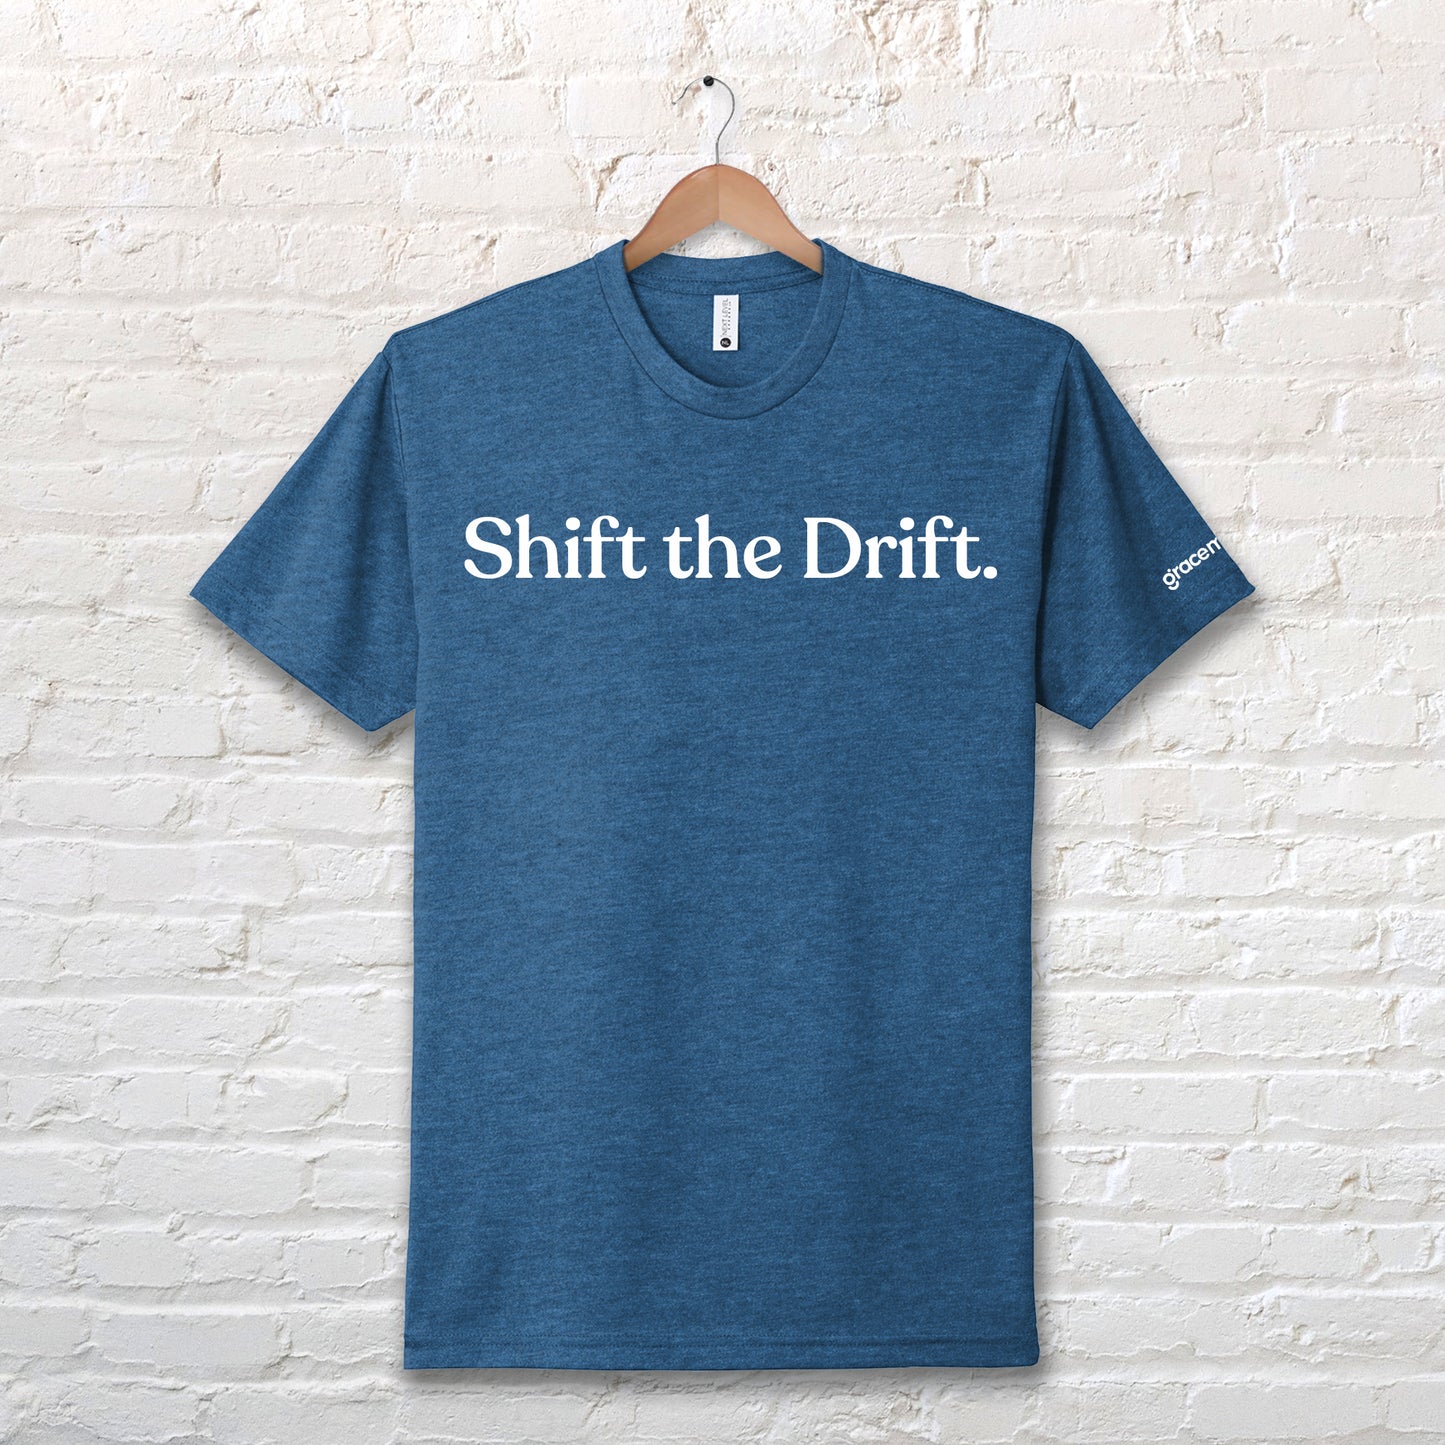 Grace Marriage "Shift the Drift" Shirt